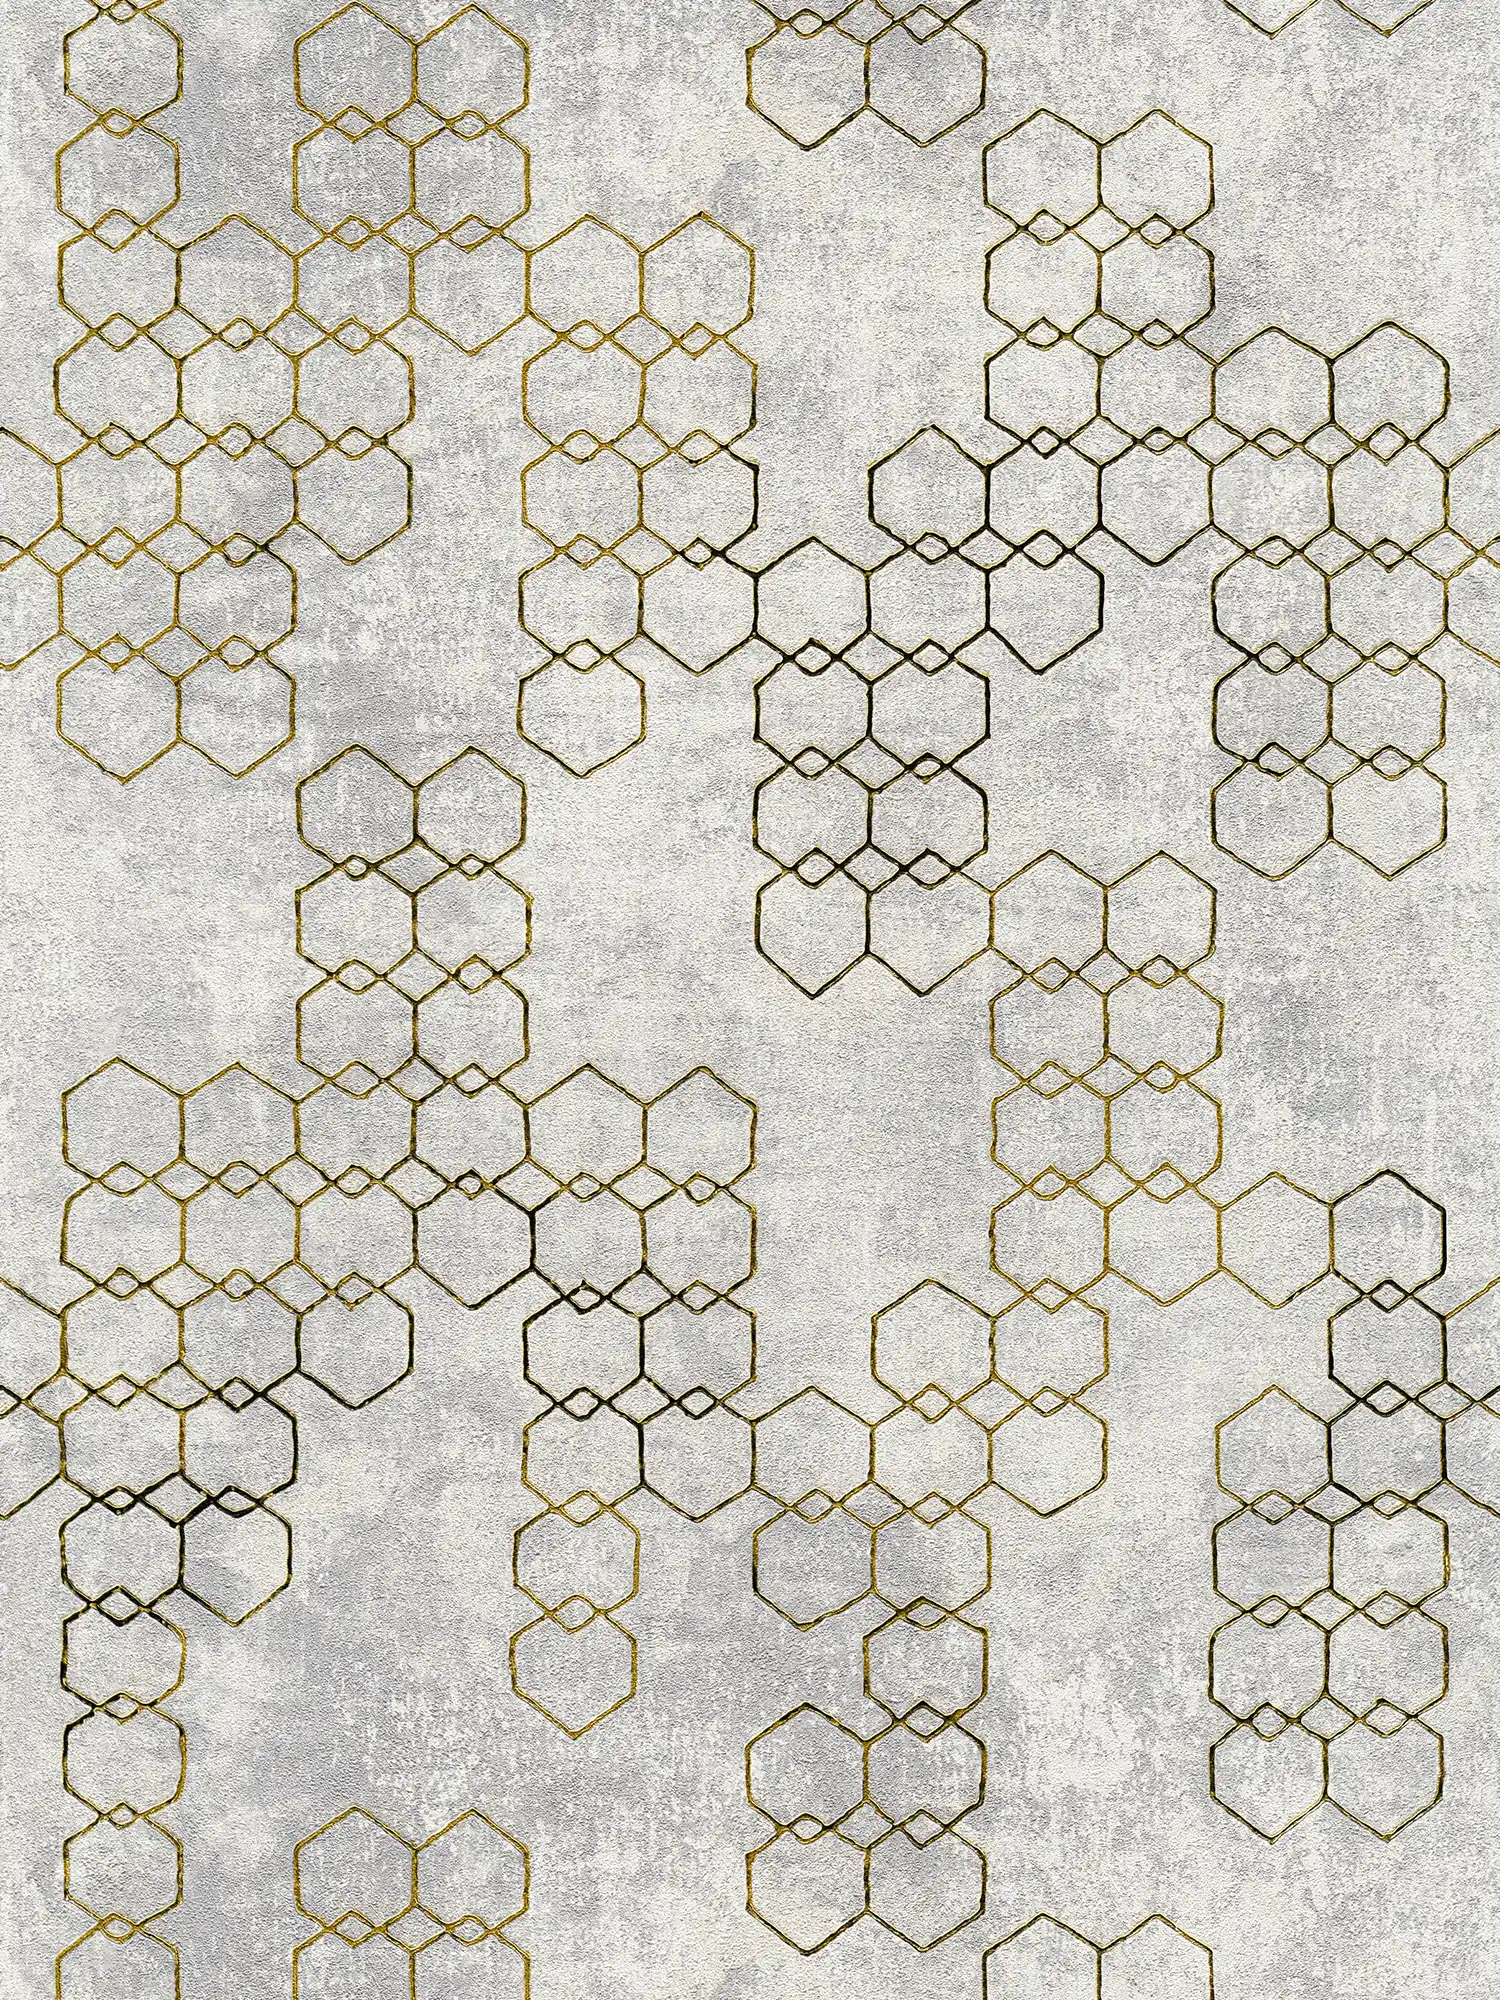 behang modern design goud & beton effect - grijs, goud
